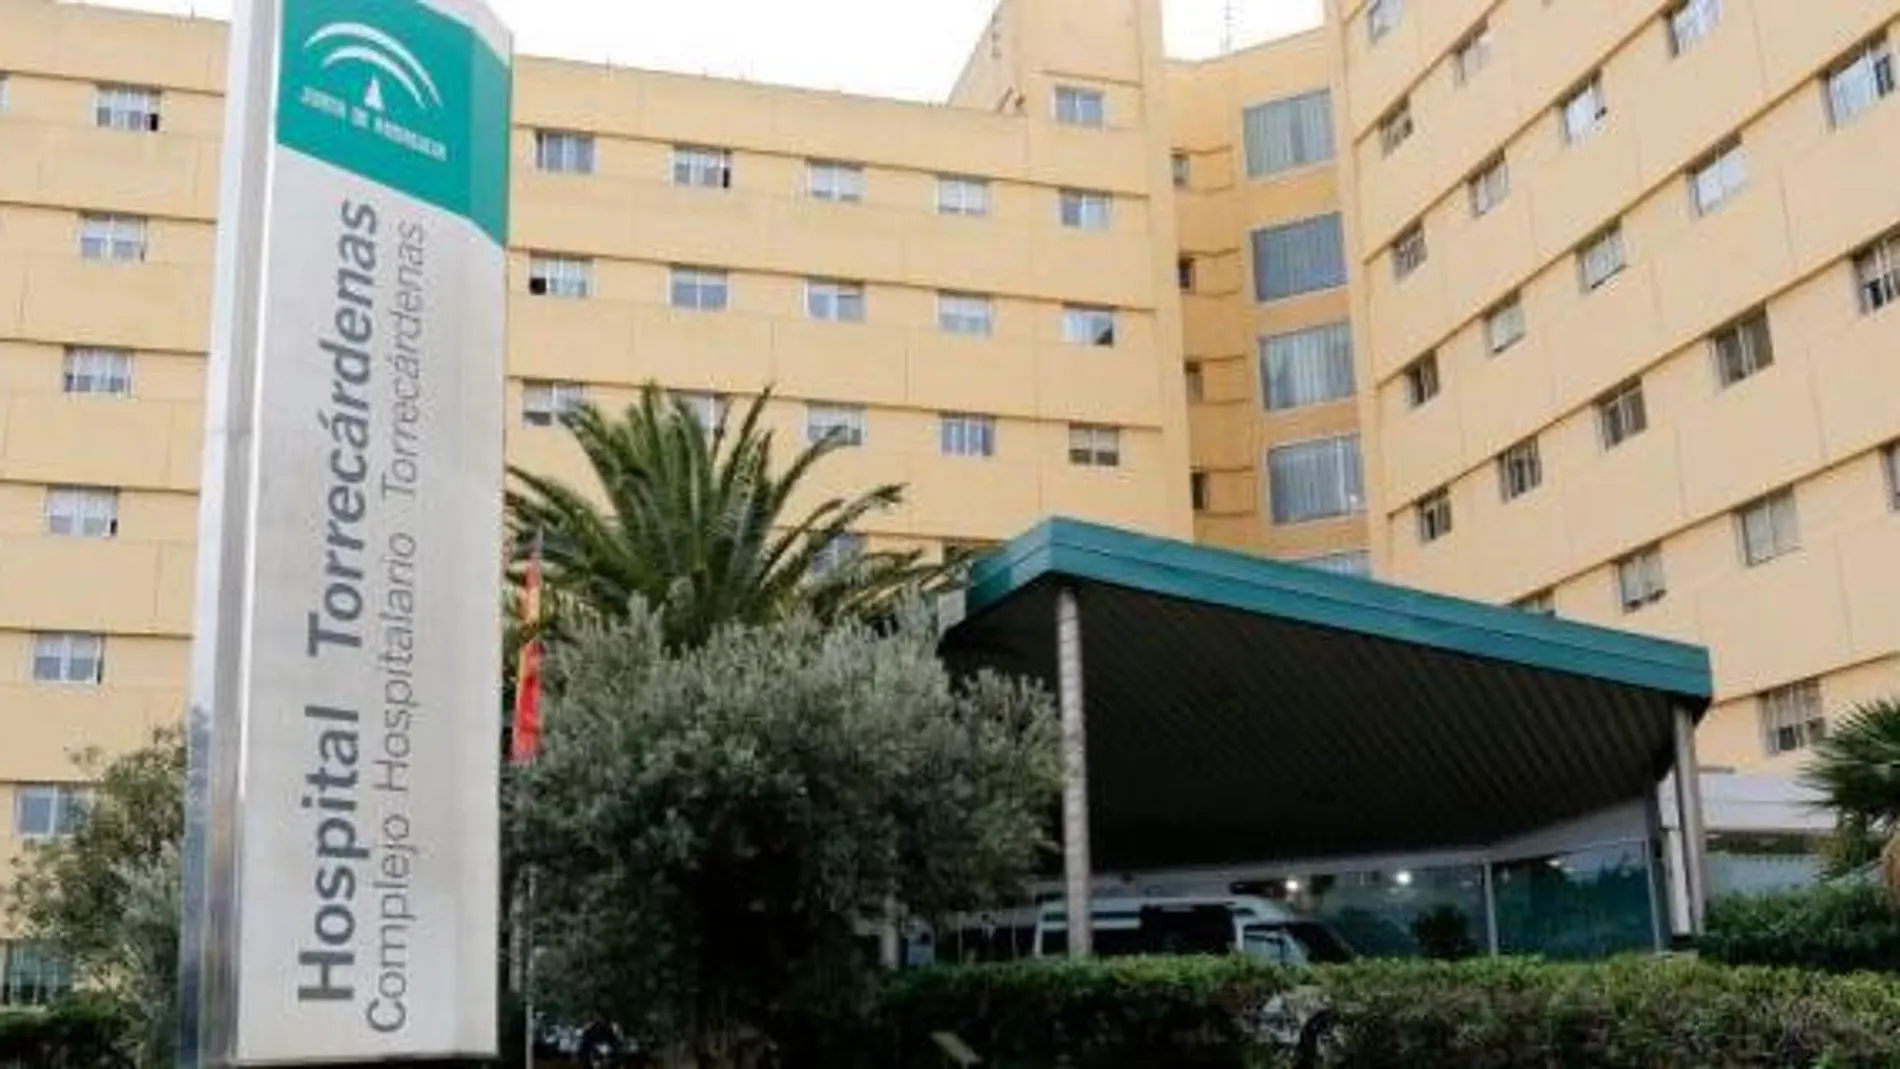 Los heridos han sido trasladados al hospital Torrecárdenas